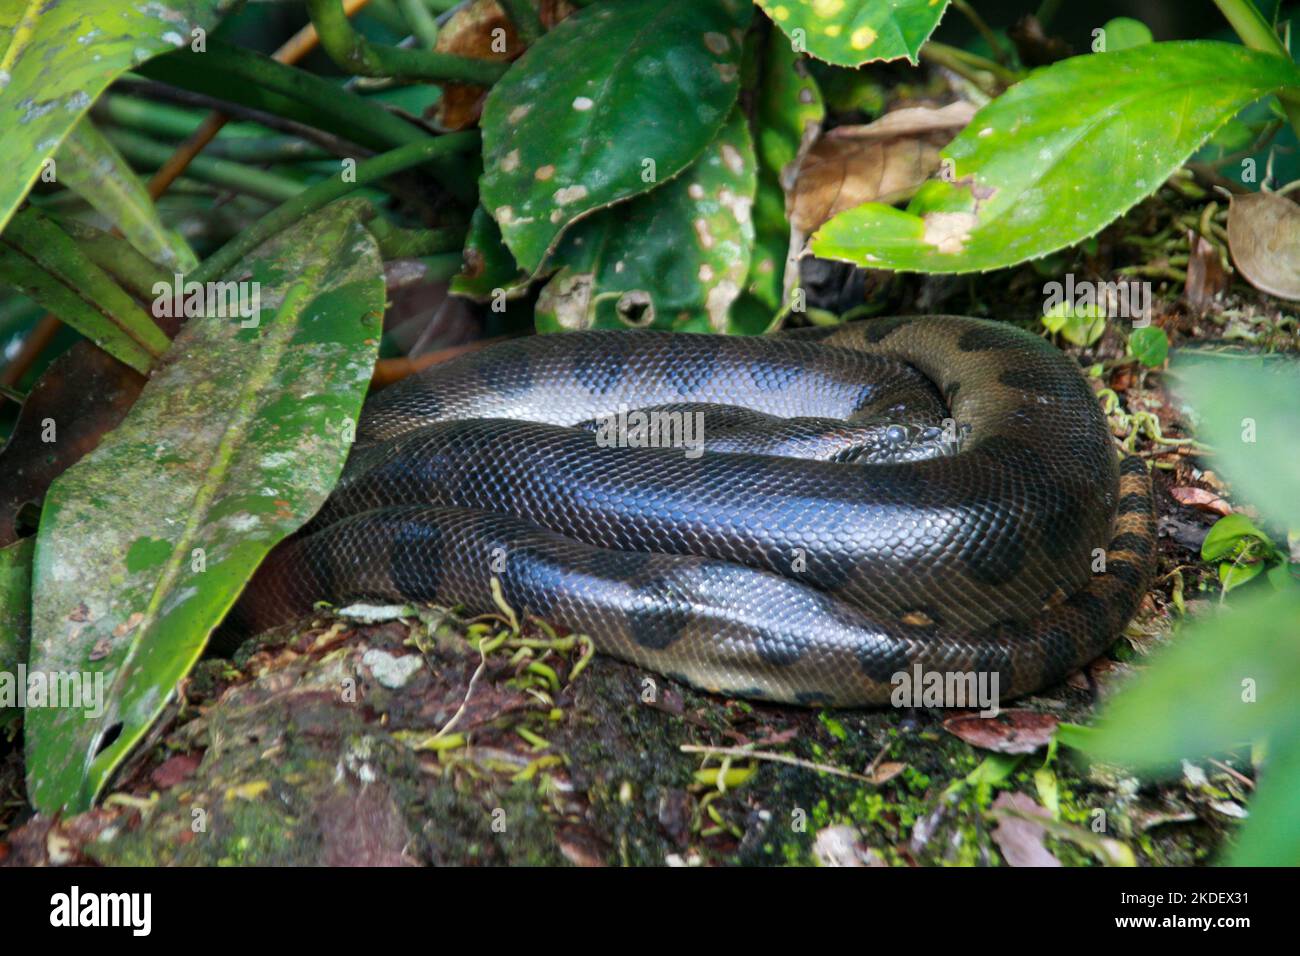 Un anaconda verde selvaggio (Eunectes murinus) la più grande specie di serpente del mondo a riposo nella riserva naturale di Cuyabeno nell'Amazzonia ecuadoriana. L'ana verde Foto Stock